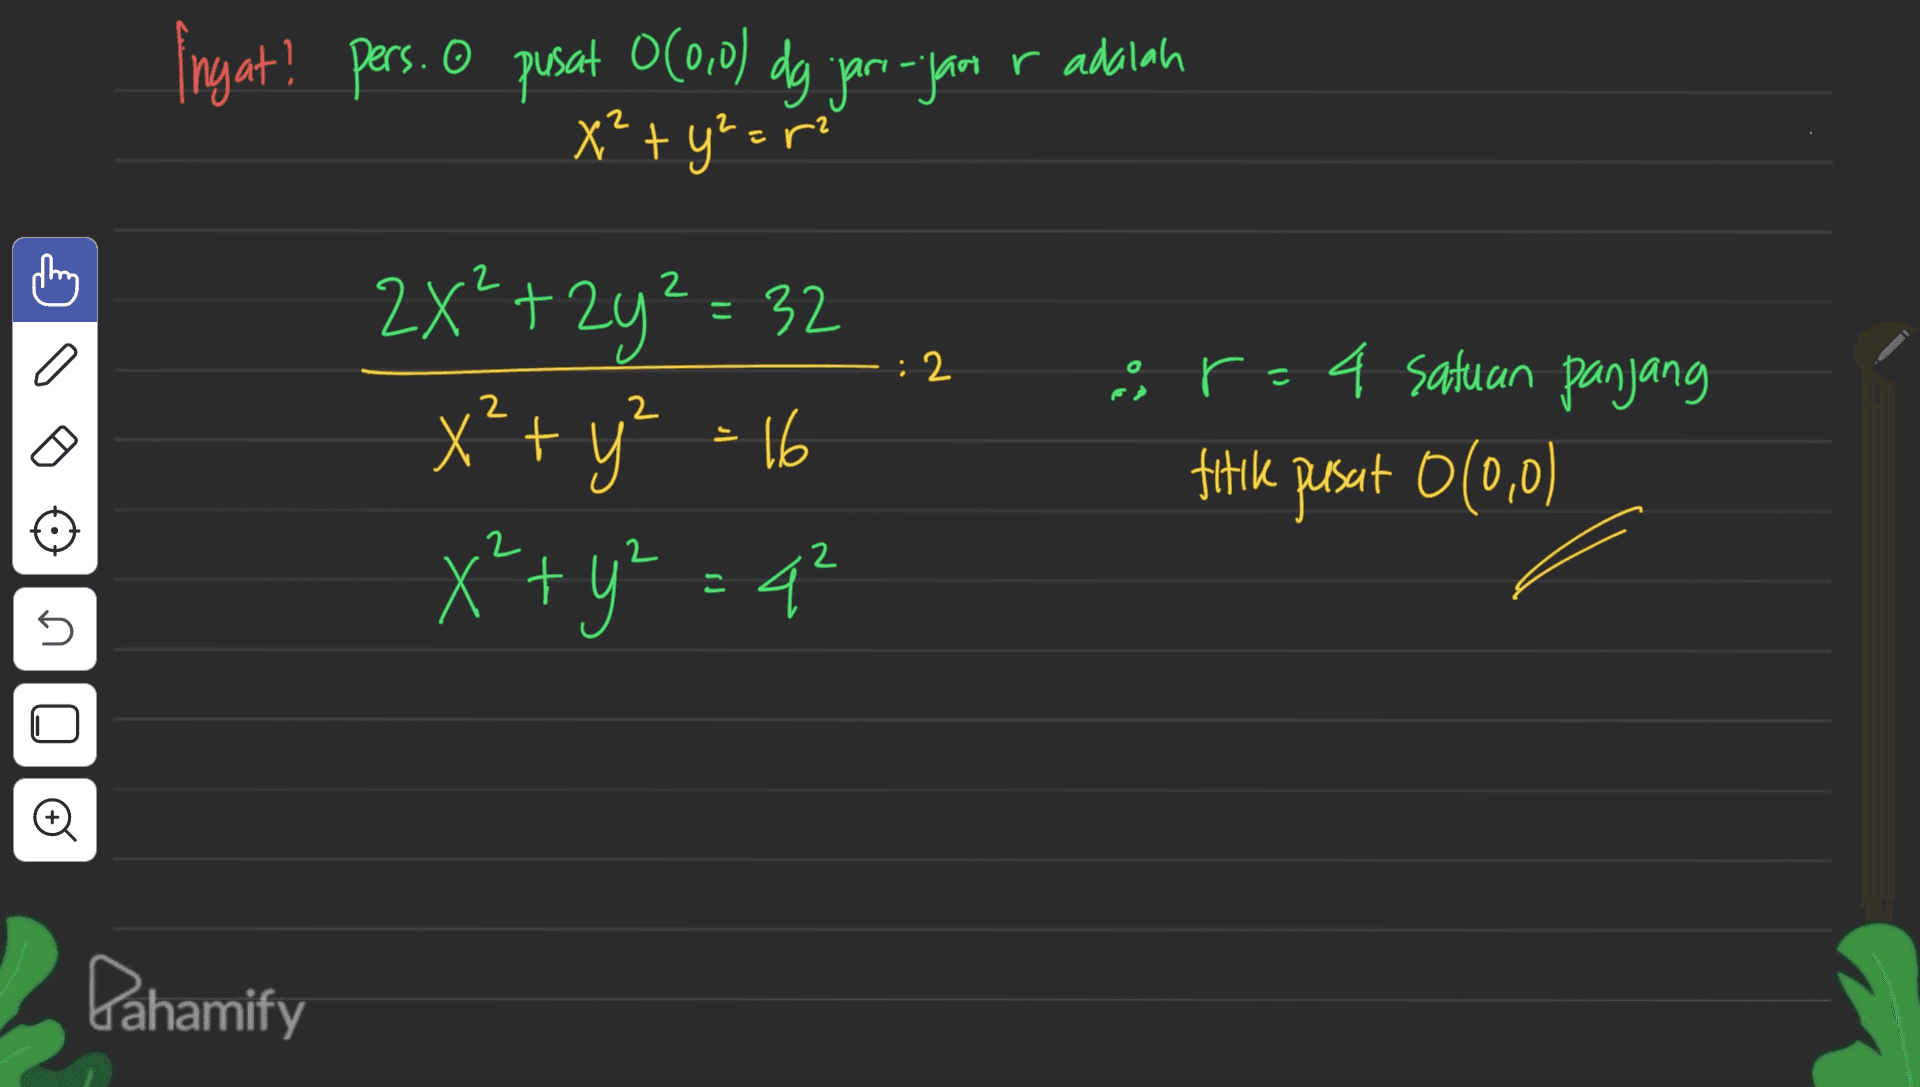 Ingat! pers. o pusat 0(0,0) dg jari-jam r adalah x² + y² = C a : 2 2X²+2y² = 32 x² + y² = 16 x² + y² = 4² or-4 satuan panjang titik pusat 0(0,0) 2 2 5 o Pahamify 